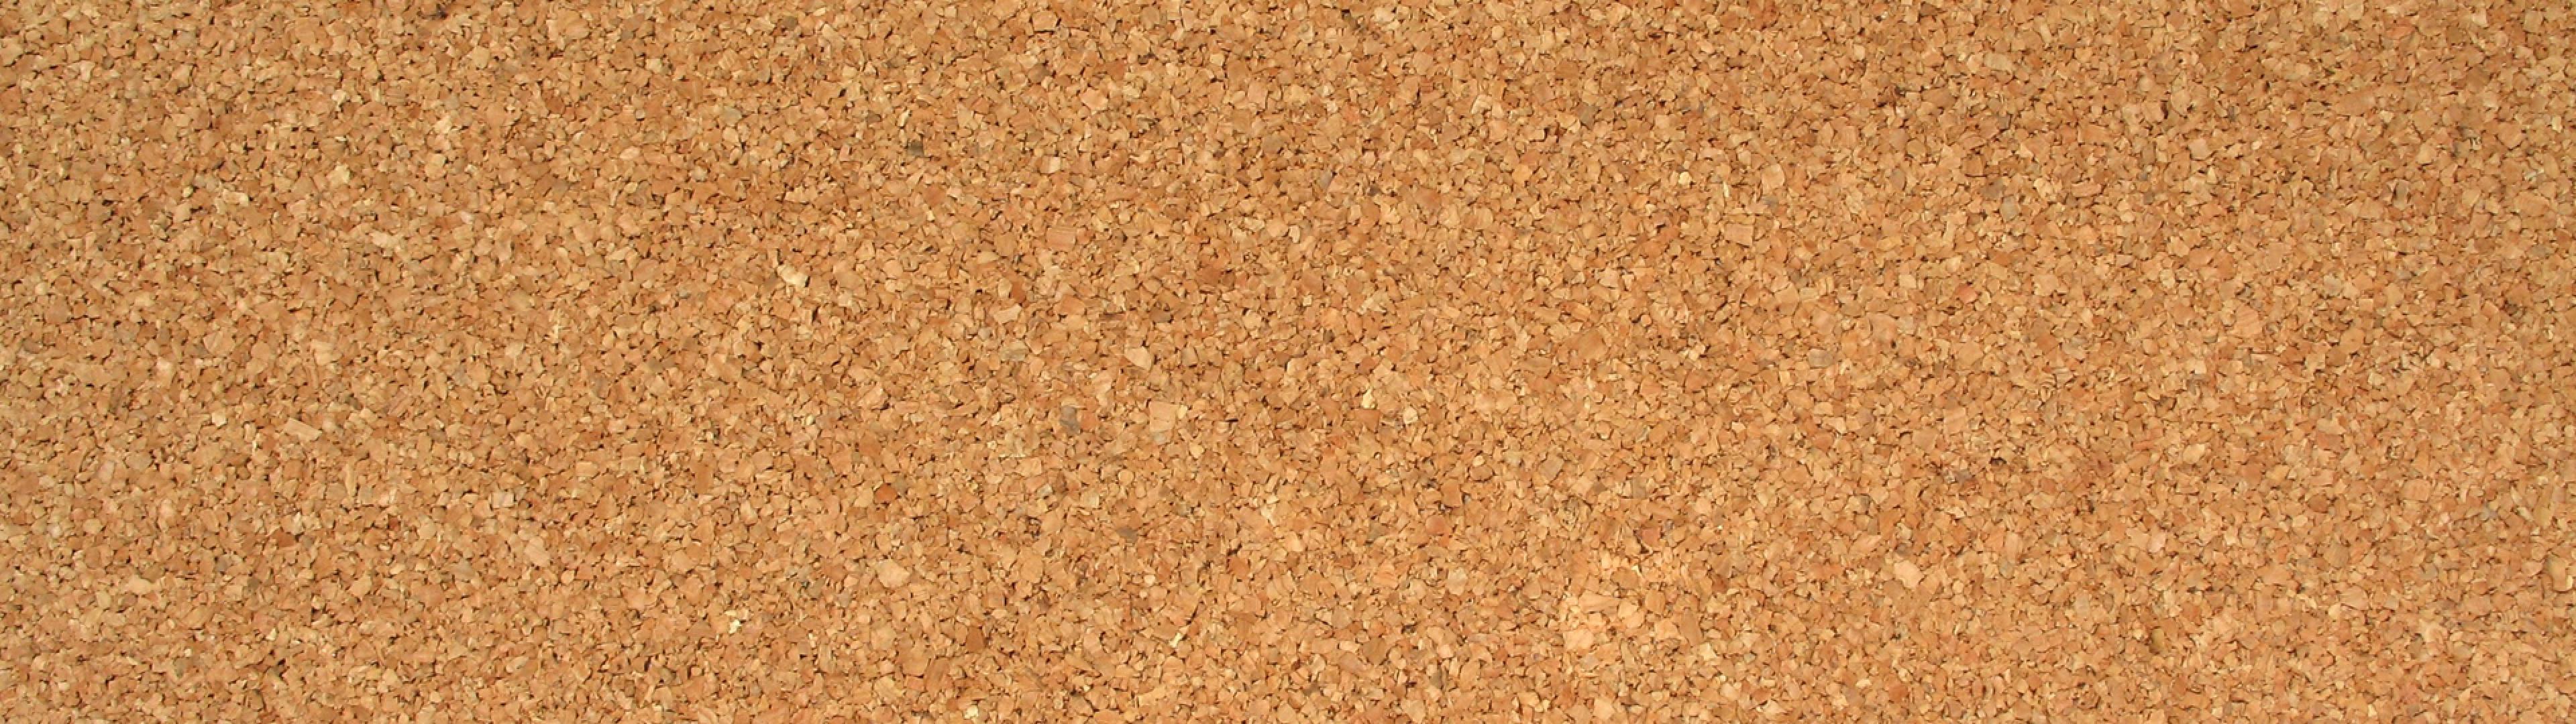 corkboard wallpaper,cork,brown,soil,beige,sand